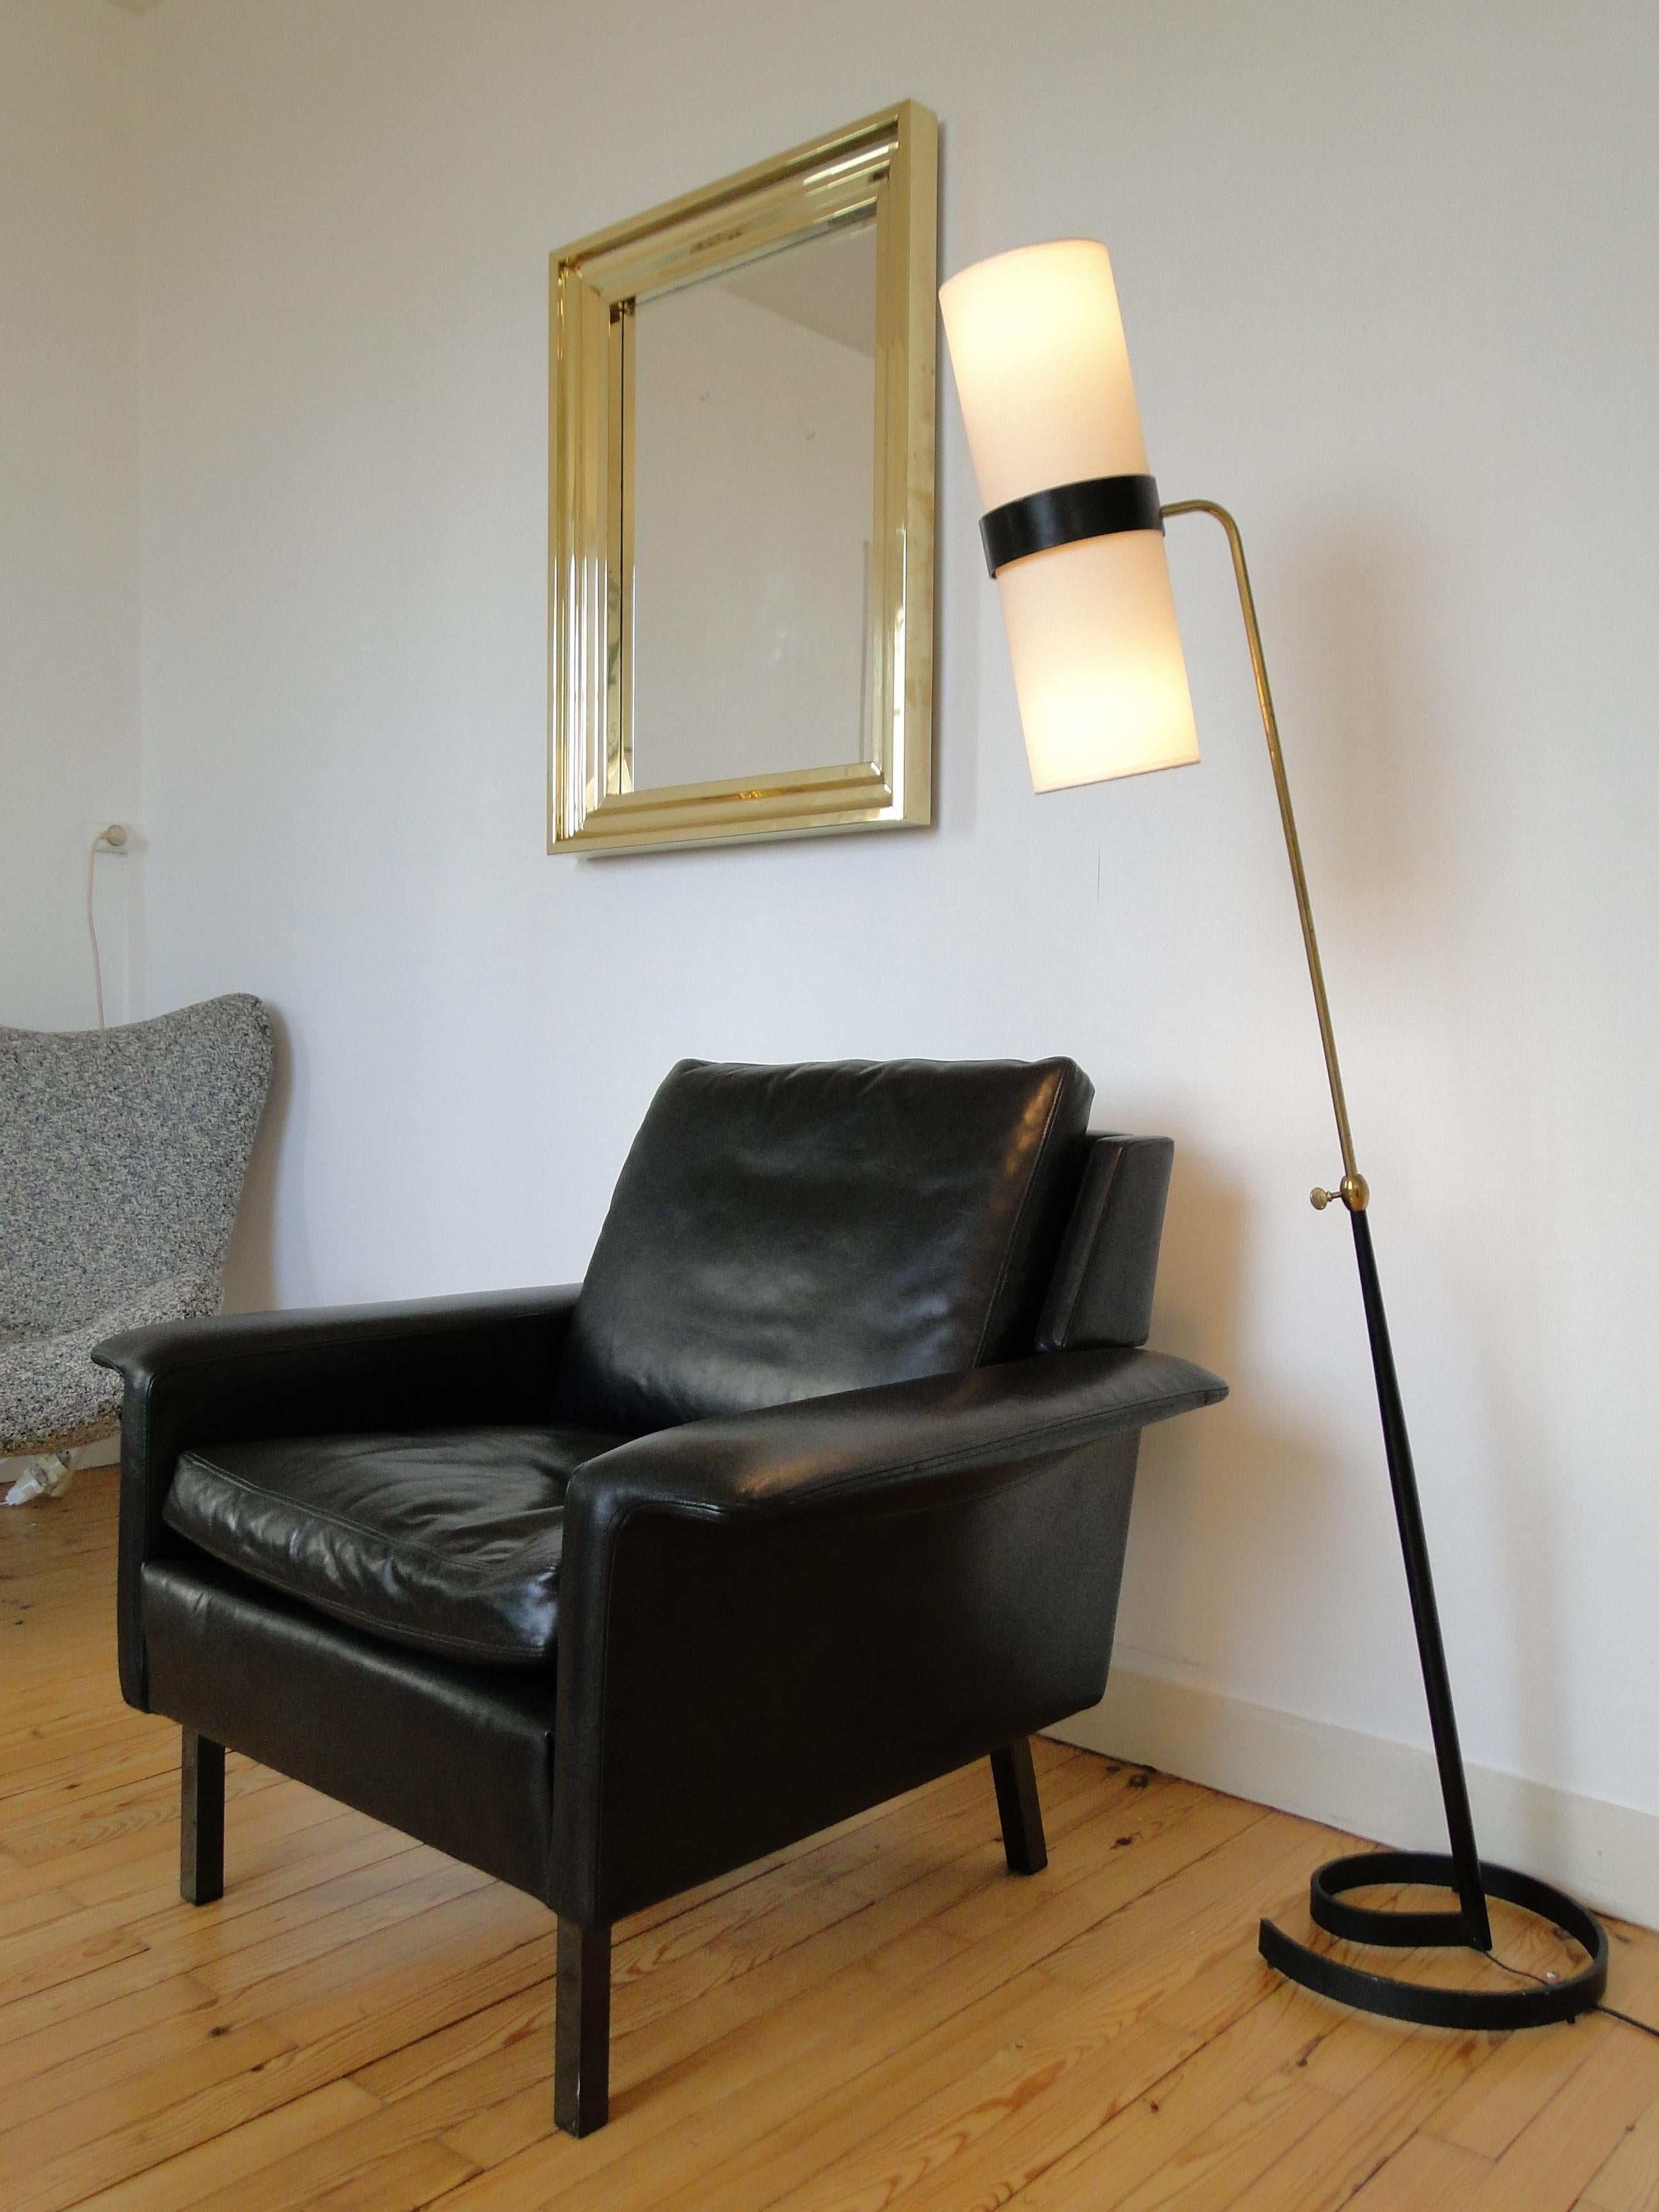 Magnifique fauteuil noir des années 1960. Modèle 3330.

Réalisé par Fritz Hansen pour Arne Vodder.

Entièrement remis à neuf avec du cuir pleine fleur de haute qualité.

Pieds en métal.

Très élégant et confortable.